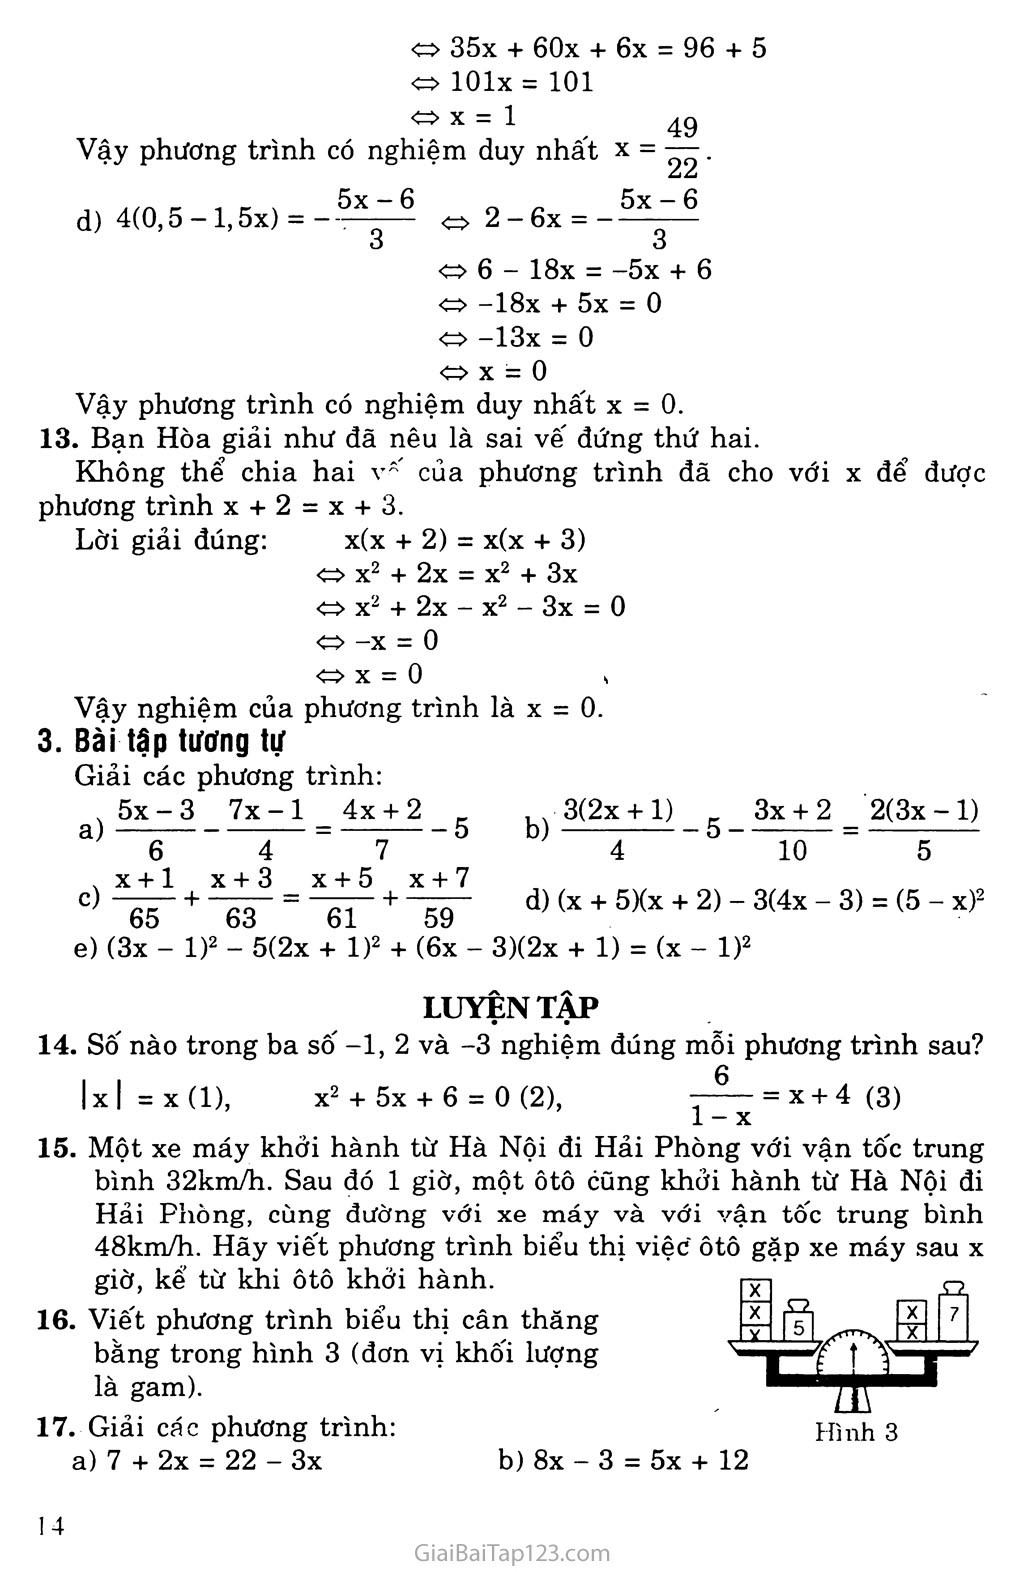 Bài 3. Phương trình đưa về dạng ax + b = 0 trang 5